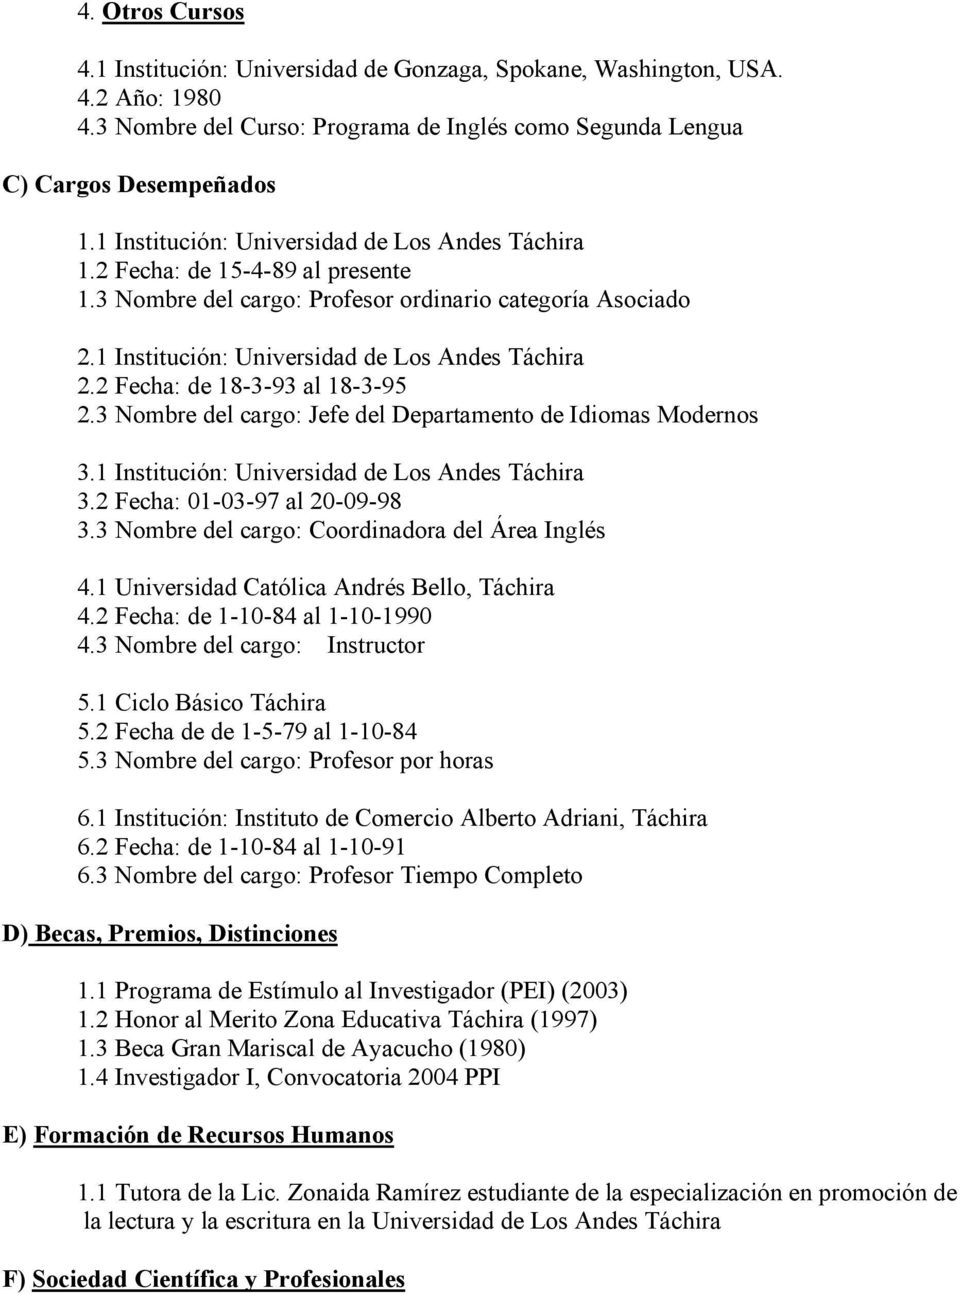 2 Fecha: de 18-3-93 al 18-3-95 2.3 Nombre del cargo: Jefe del Departamento de Idiomas Modernos 3.1 Institución: Universidad de Los Andes Táchira 3.2 Fecha: 01-03-97 al 20-09-98 3.